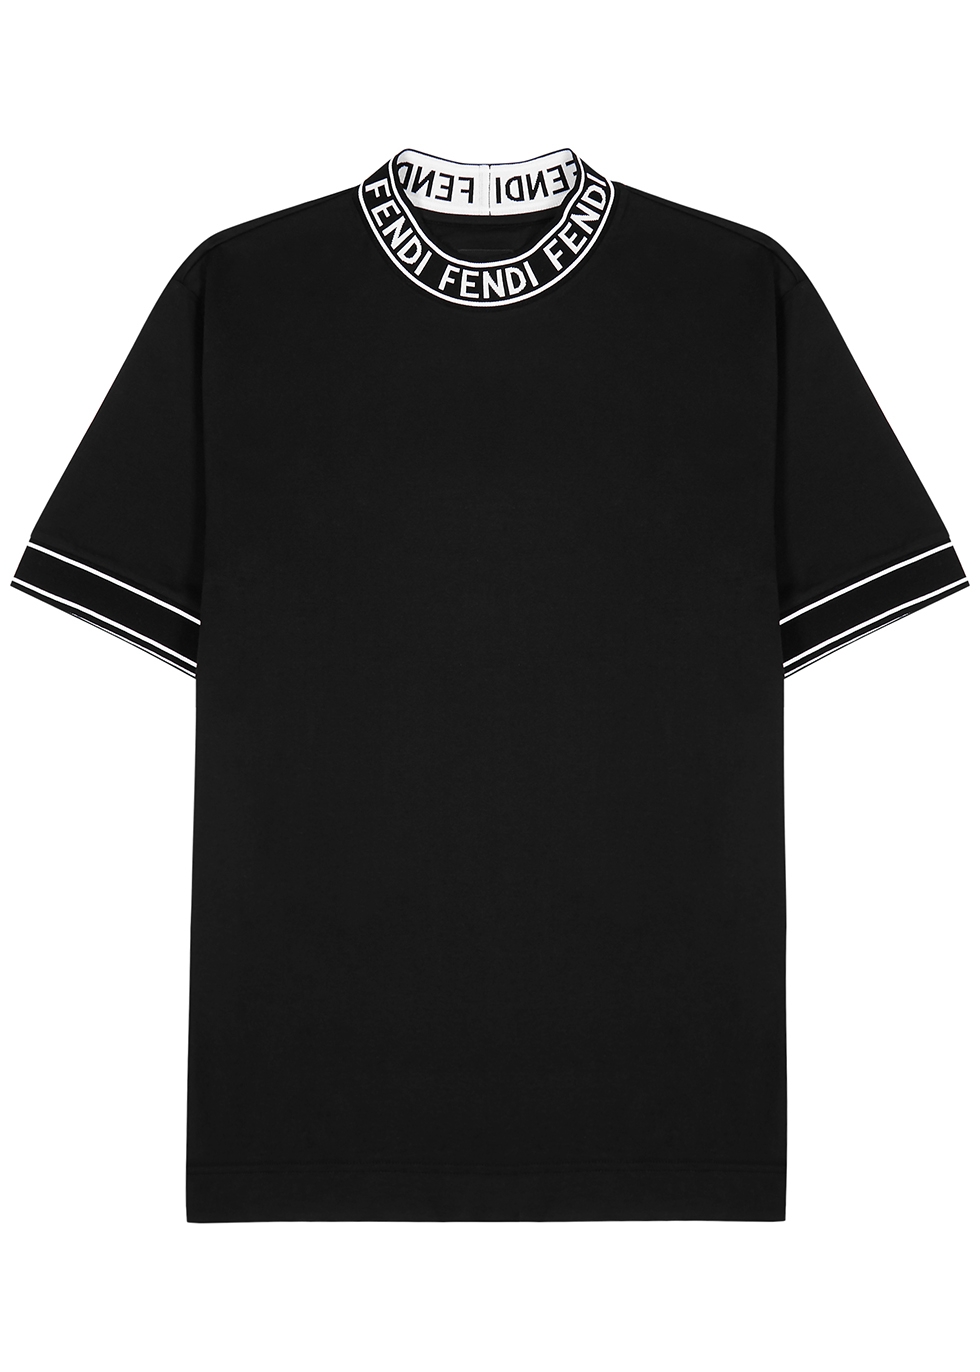 Fendi Black T Shirt Store, 51% OFF | lagence.tv